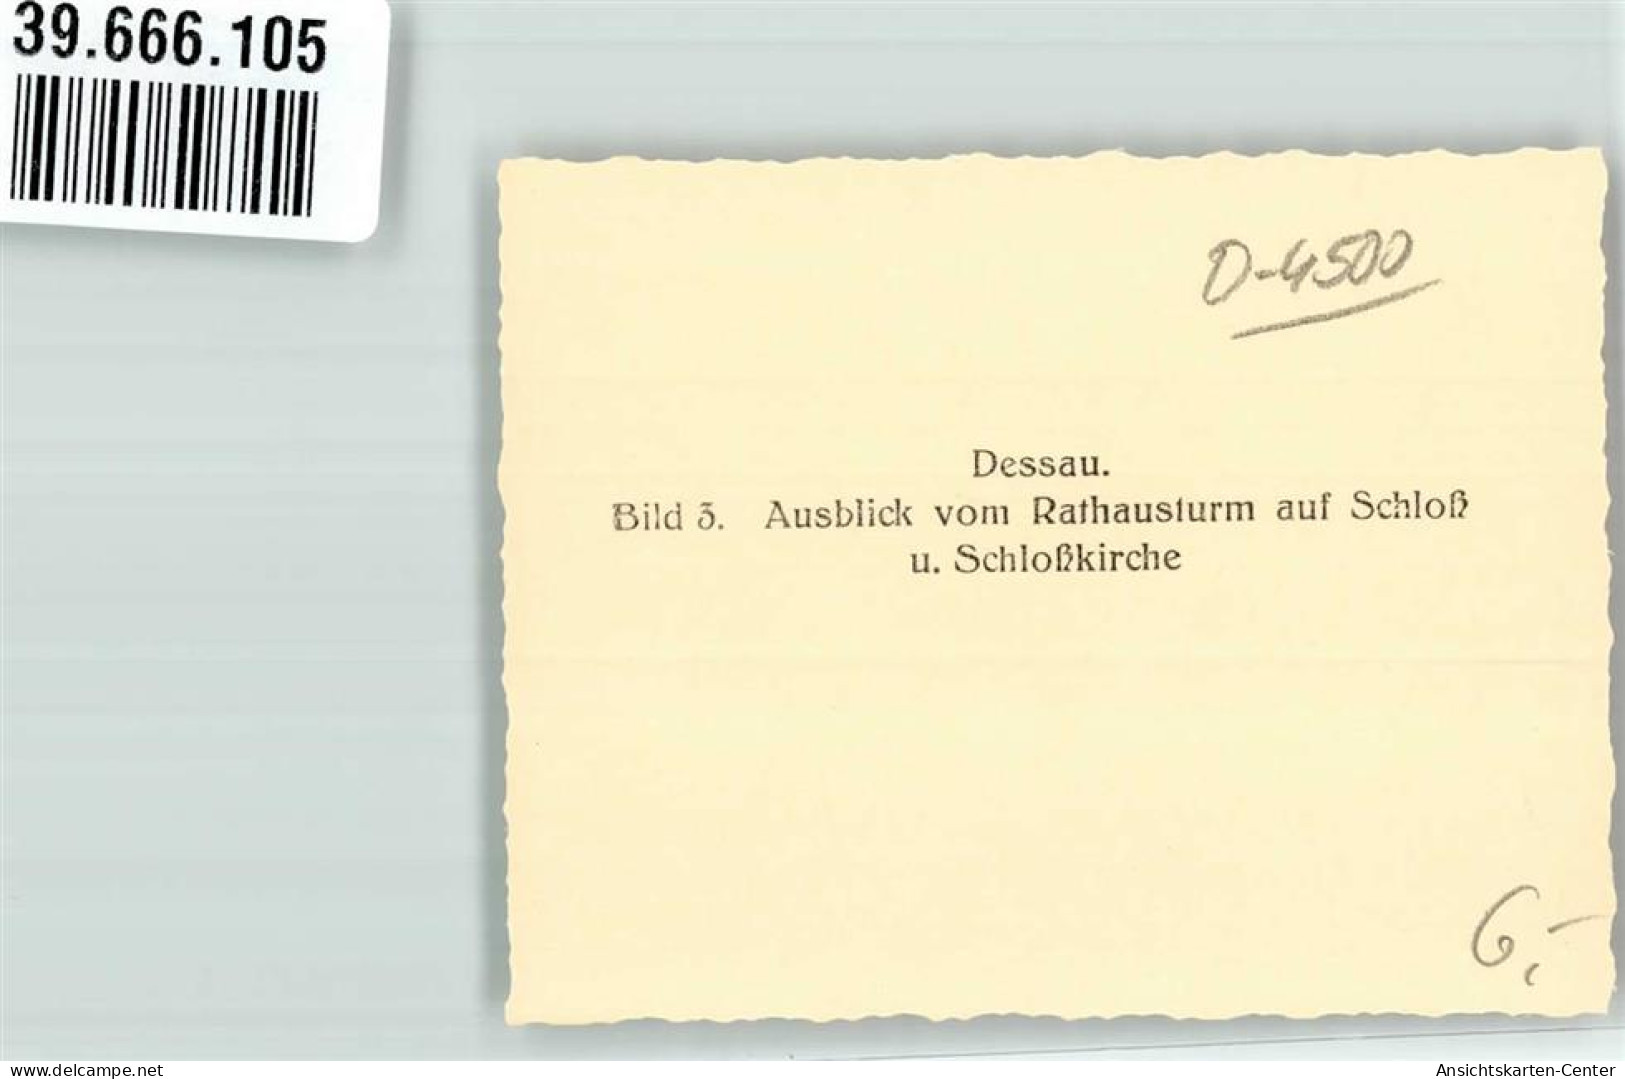 39666105 - Dessau , Anh - Dessau